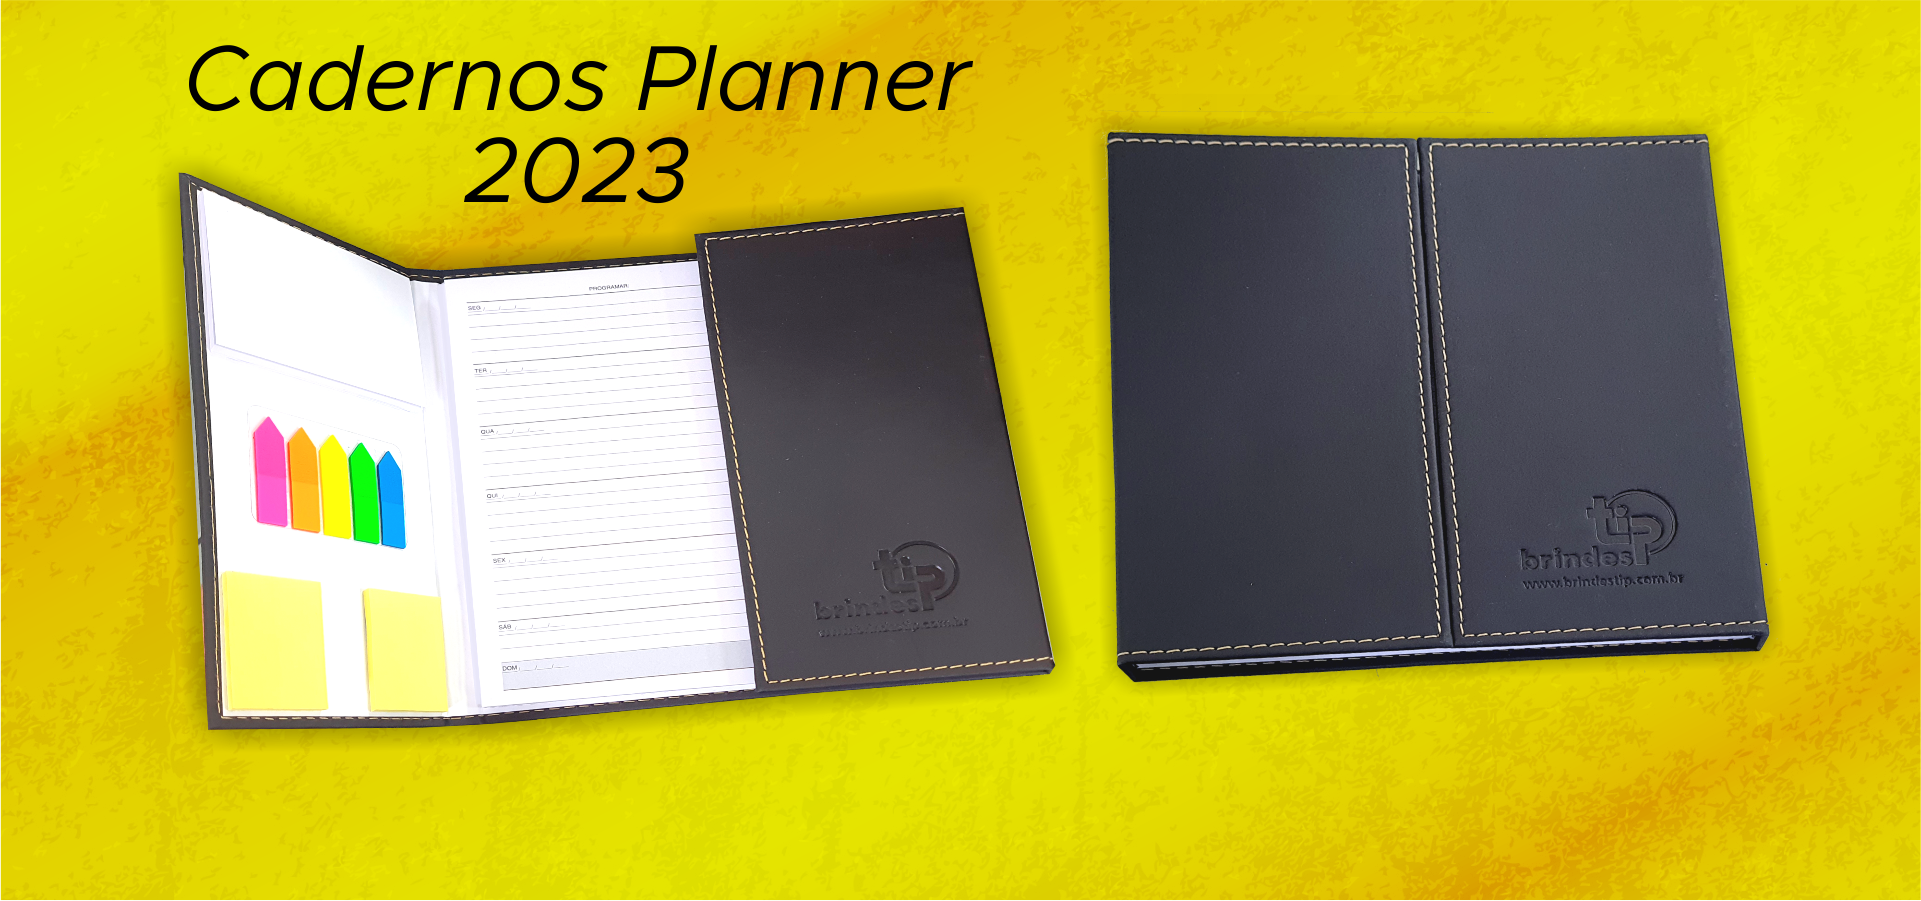 Cadernos Planner 2023